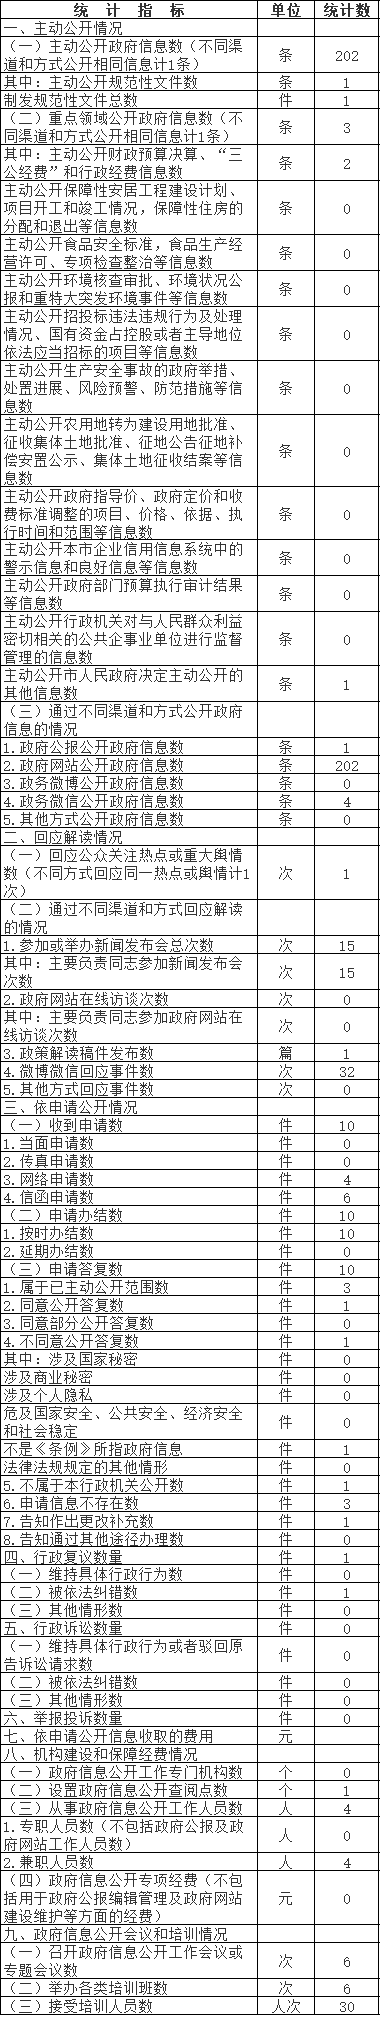 北京市中醫管理局政府信息公開情況統計表(2017年度)